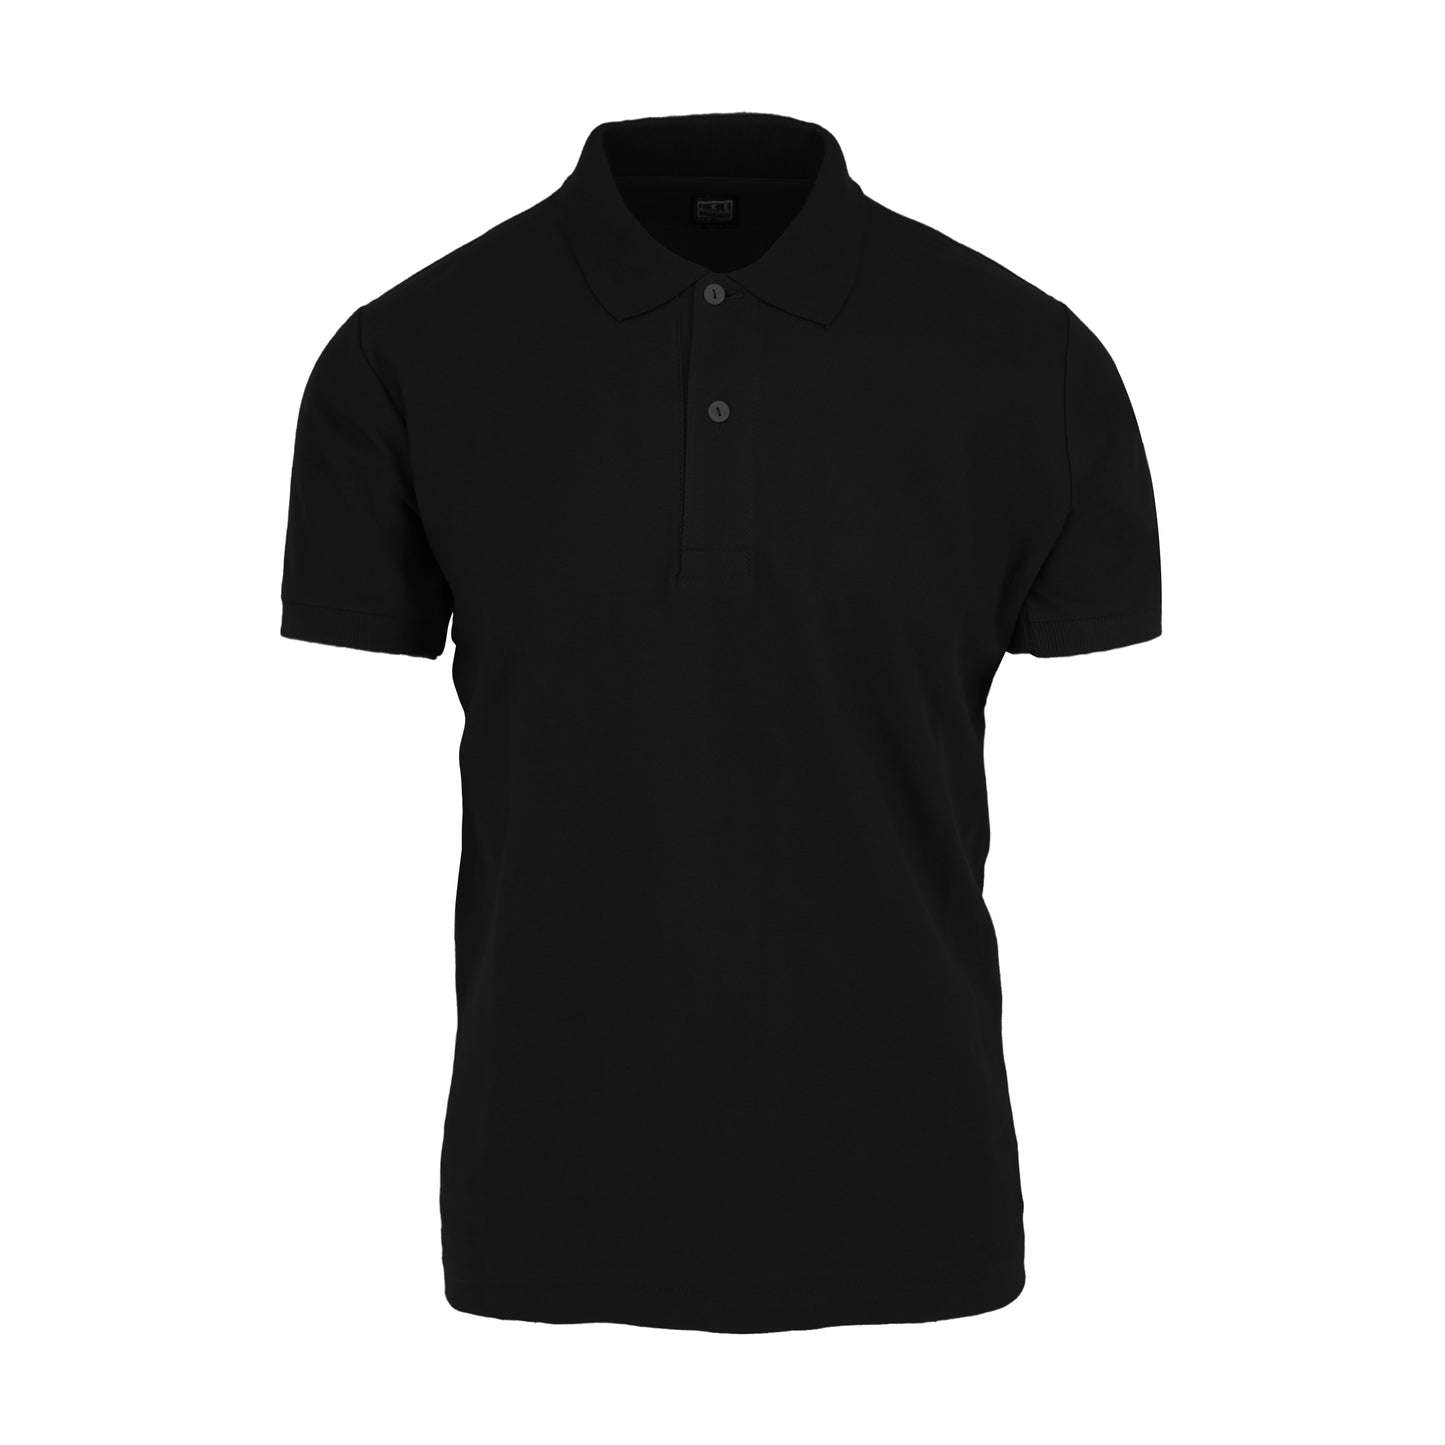 Black Short Sleeve Pique Polo